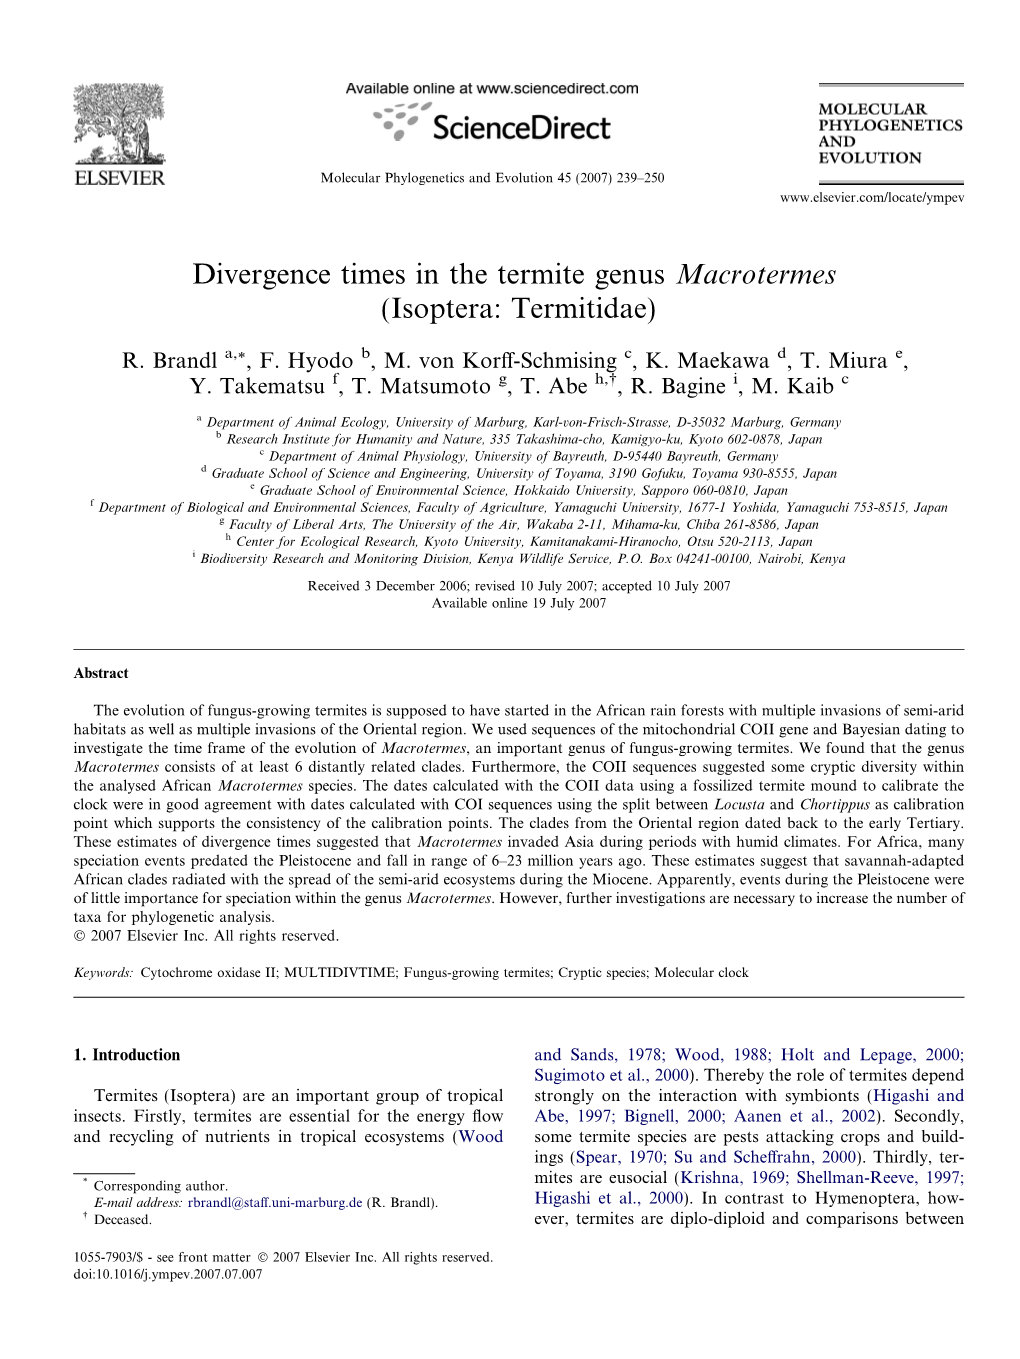 Divergence Times in the Termite Genus Macrotermes (Isoptera: Termitidae)